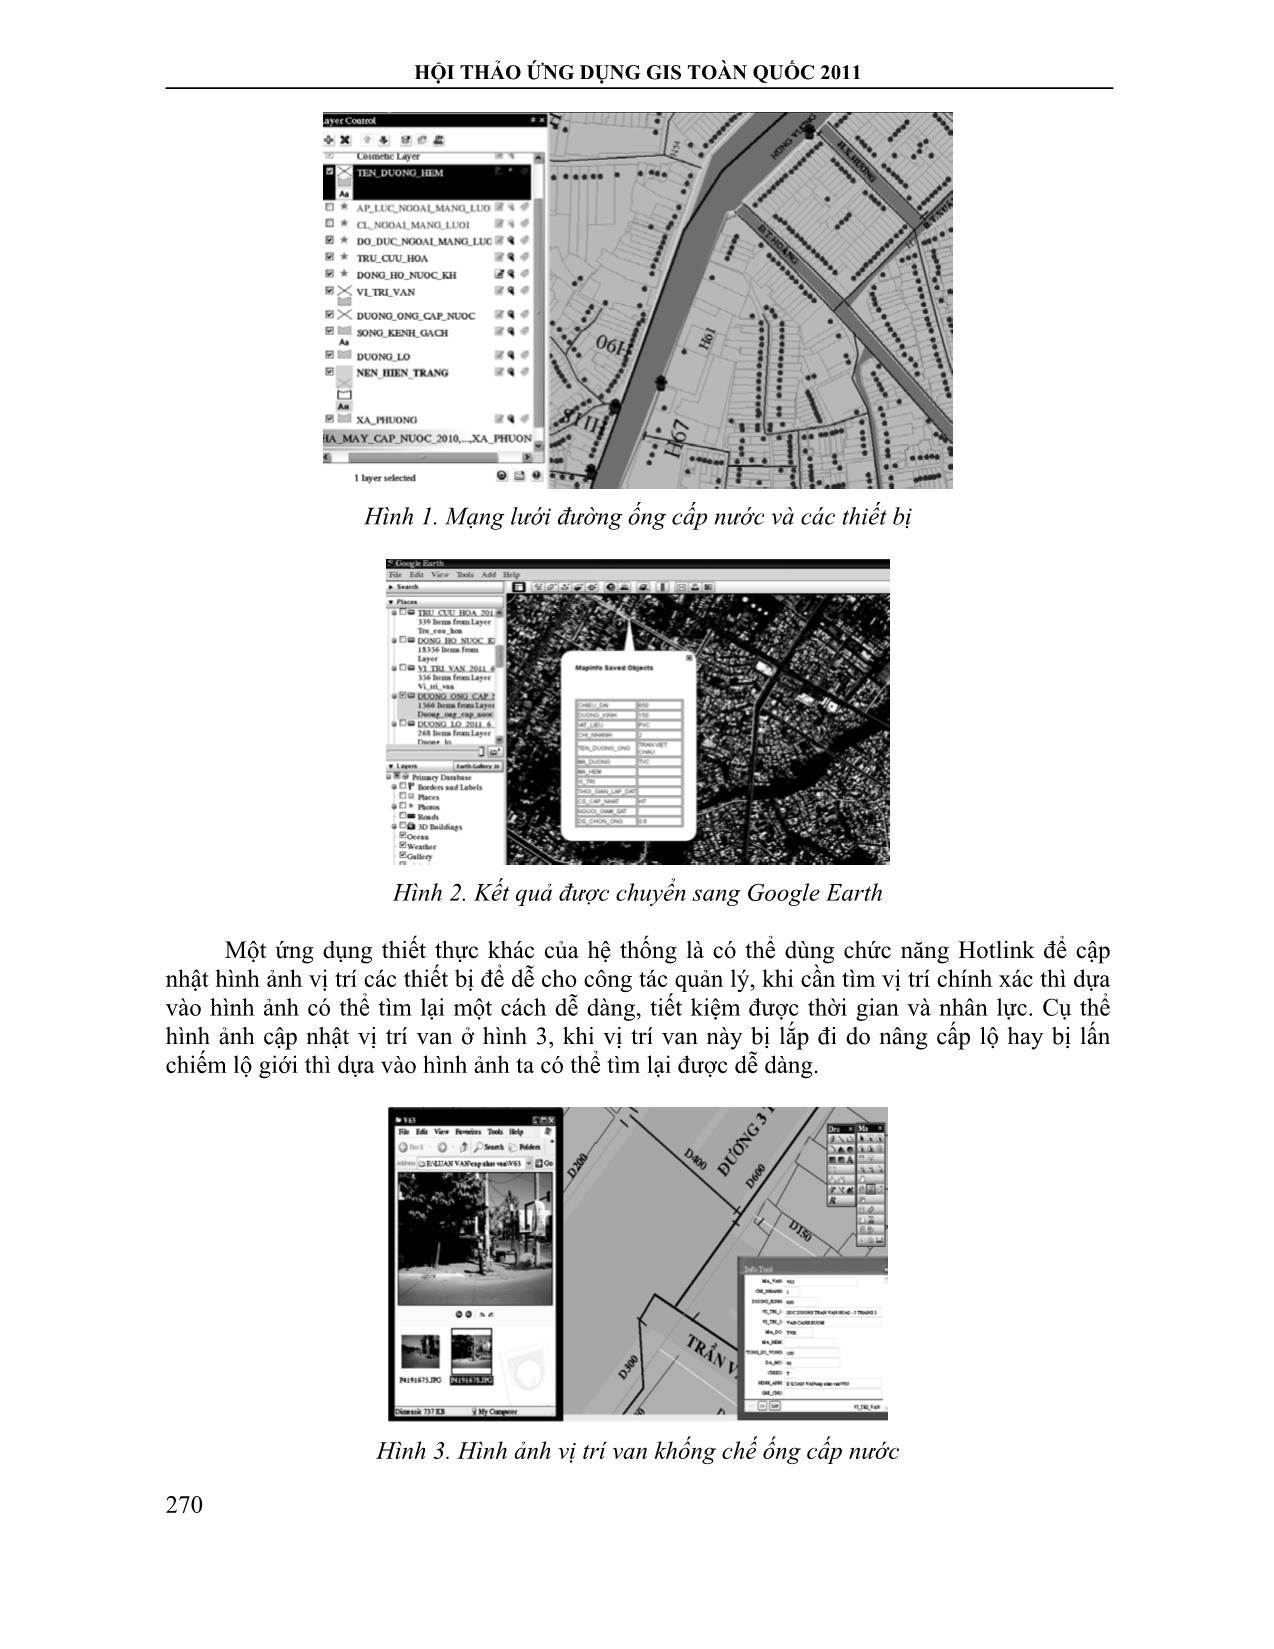 Ứng dụng GIS quản lý cấp nước khu vực nội ô thành phố Cần Thơ trang 5